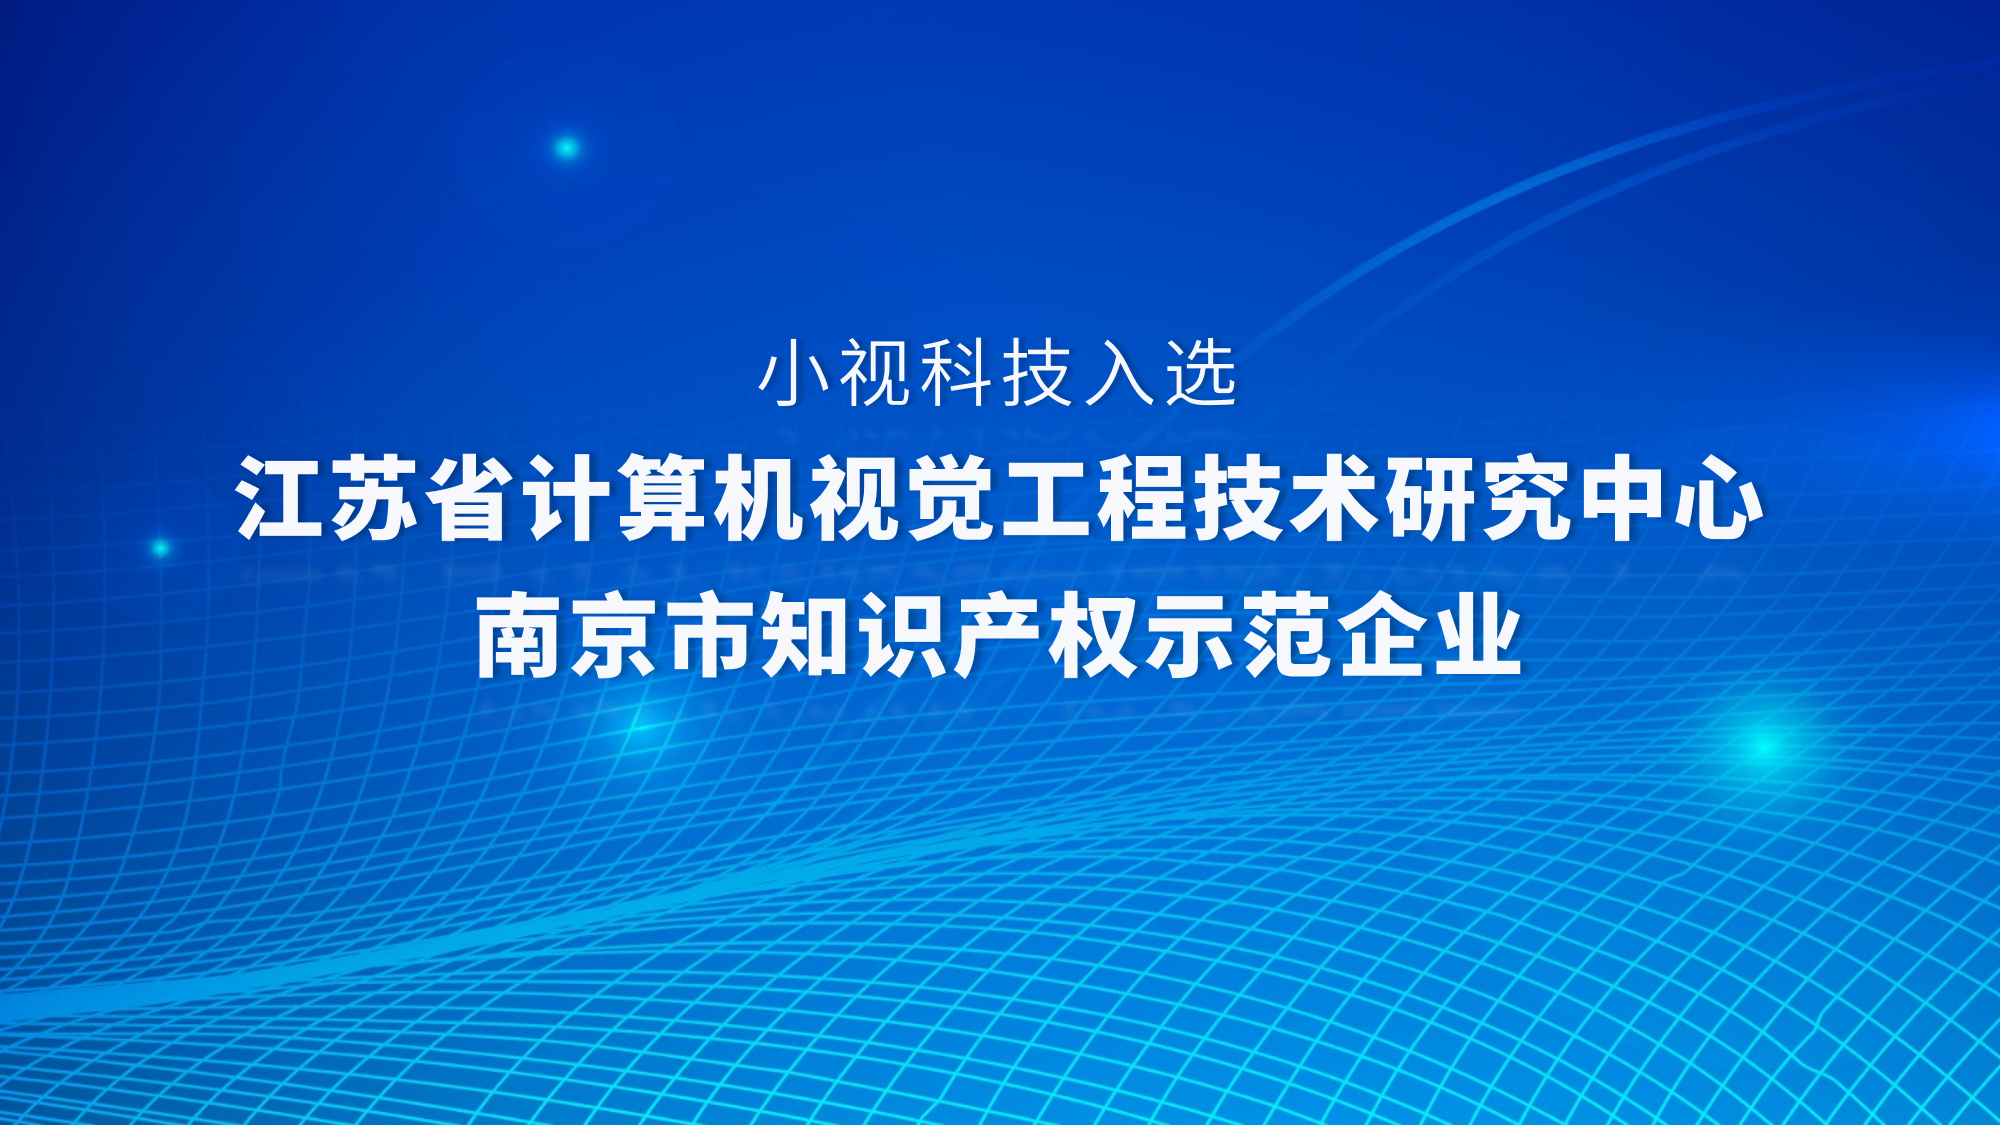 实力认证！小视科技获评江苏省计算机视觉工程技术研究中心、入选“南京市知识产权示范企业”